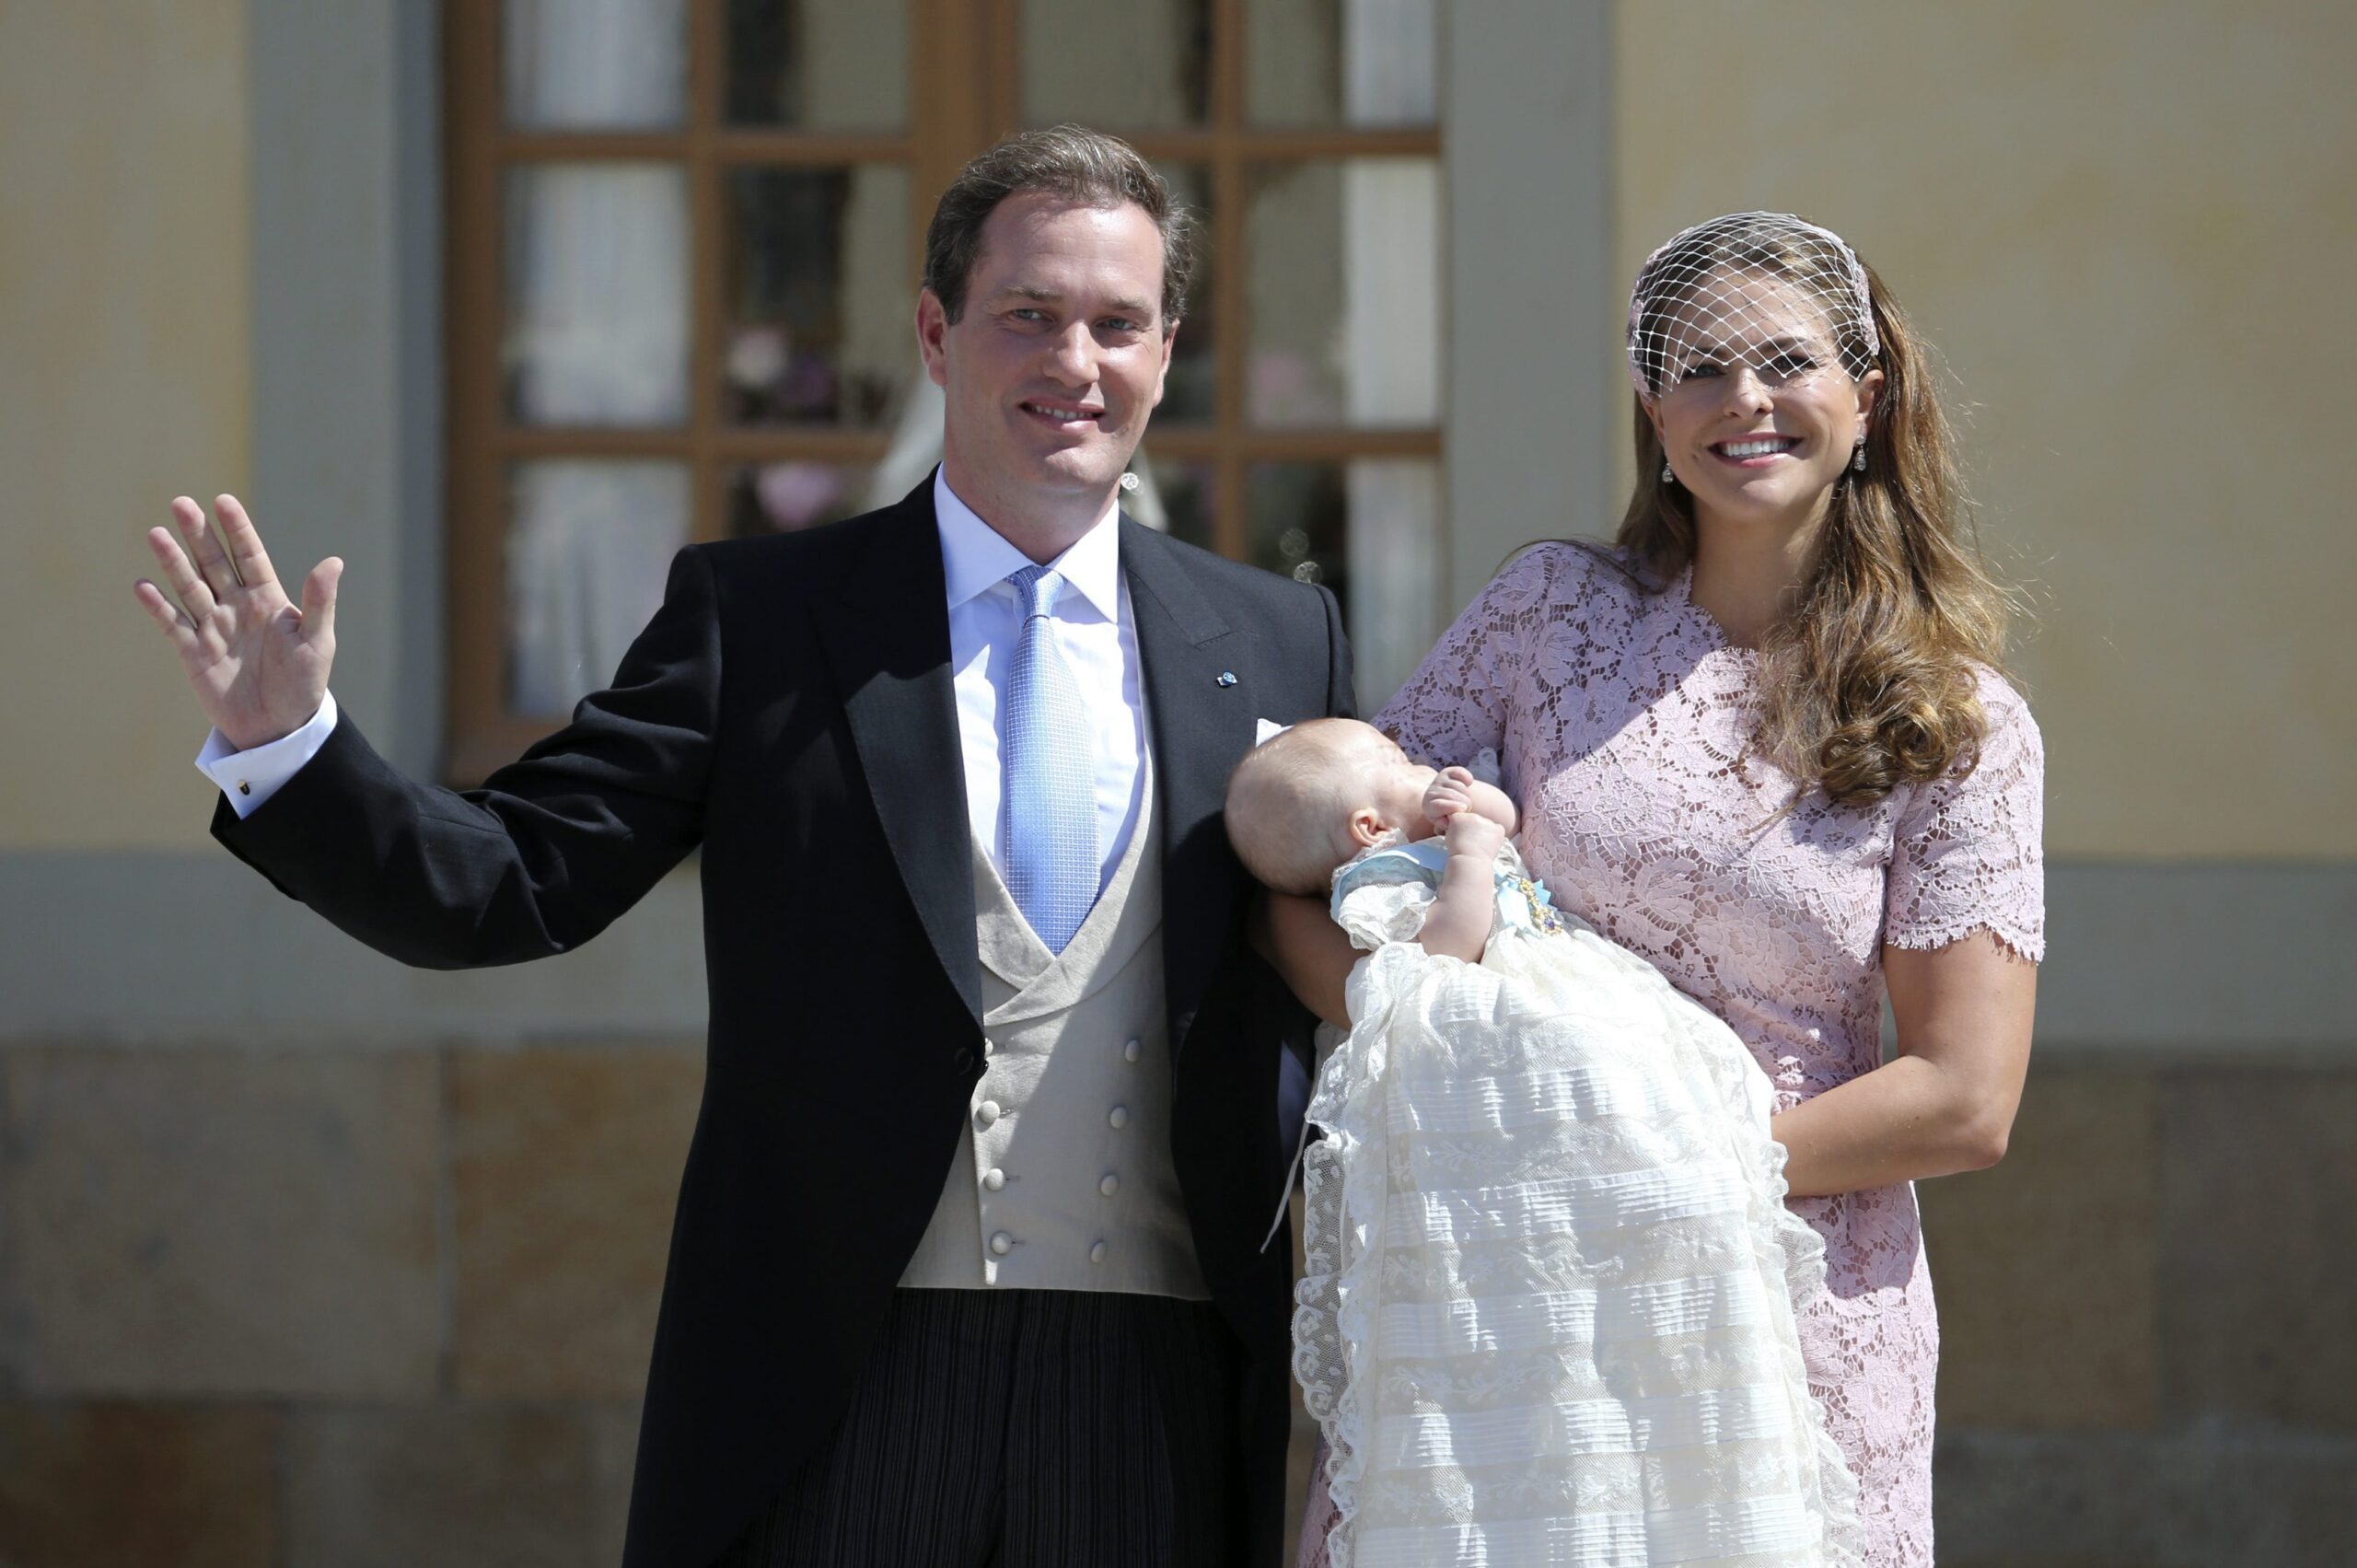 Swedish princess baptized in royal ceremony - Washington Examiner